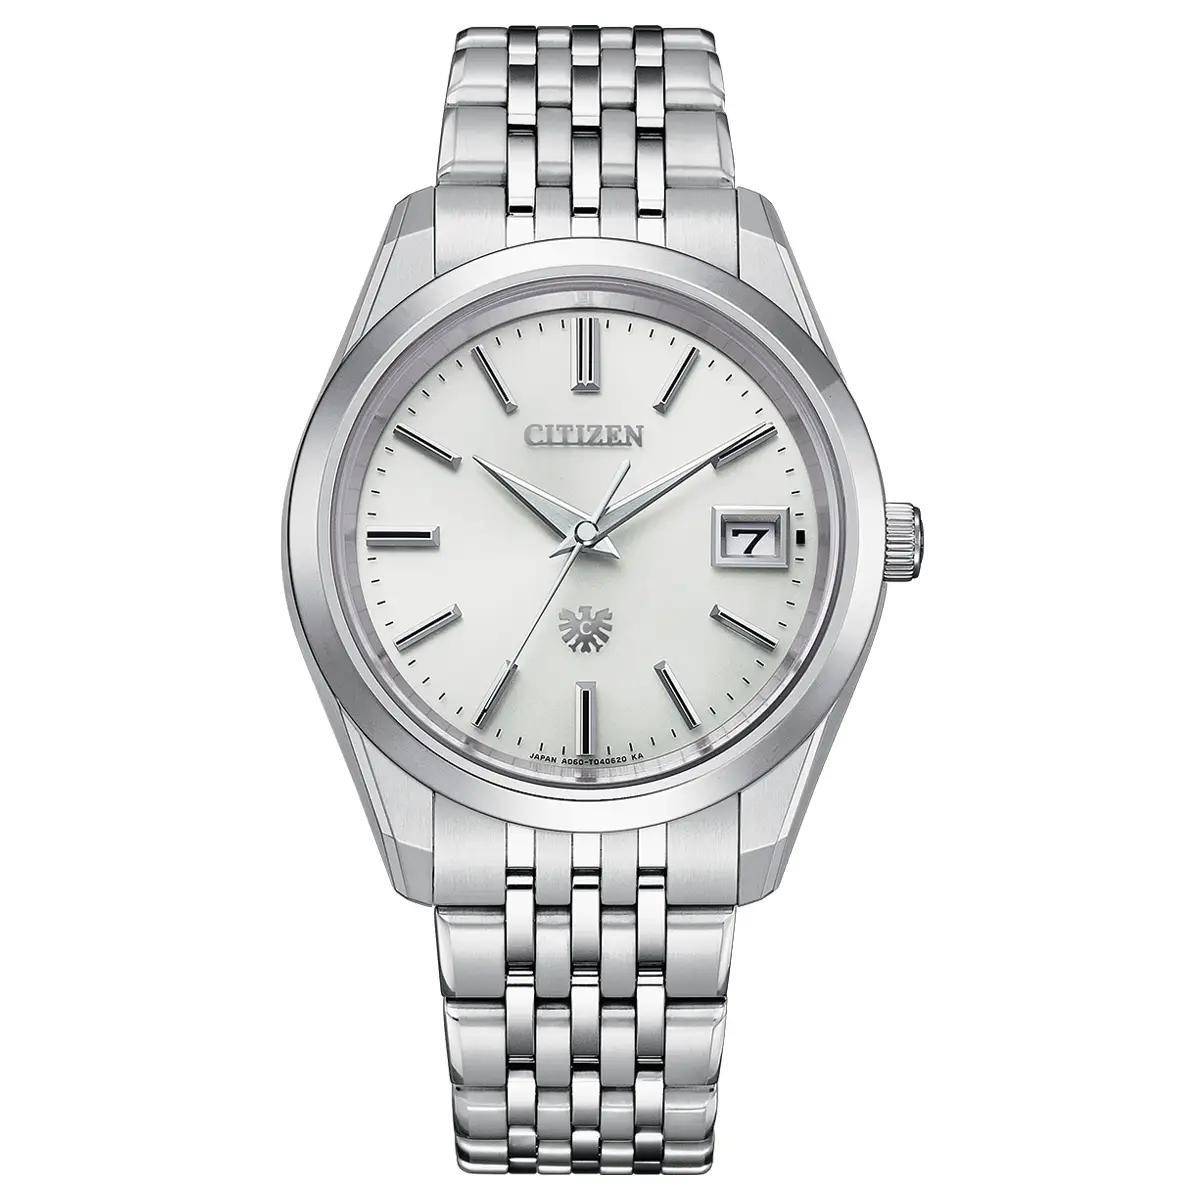 Đồng hồ The Citizen Eco-Drive Titanium AQ4100-57A với mặt số màu trắng. Dây đeo bằng titanium. Thân vỏ bằng titanium.